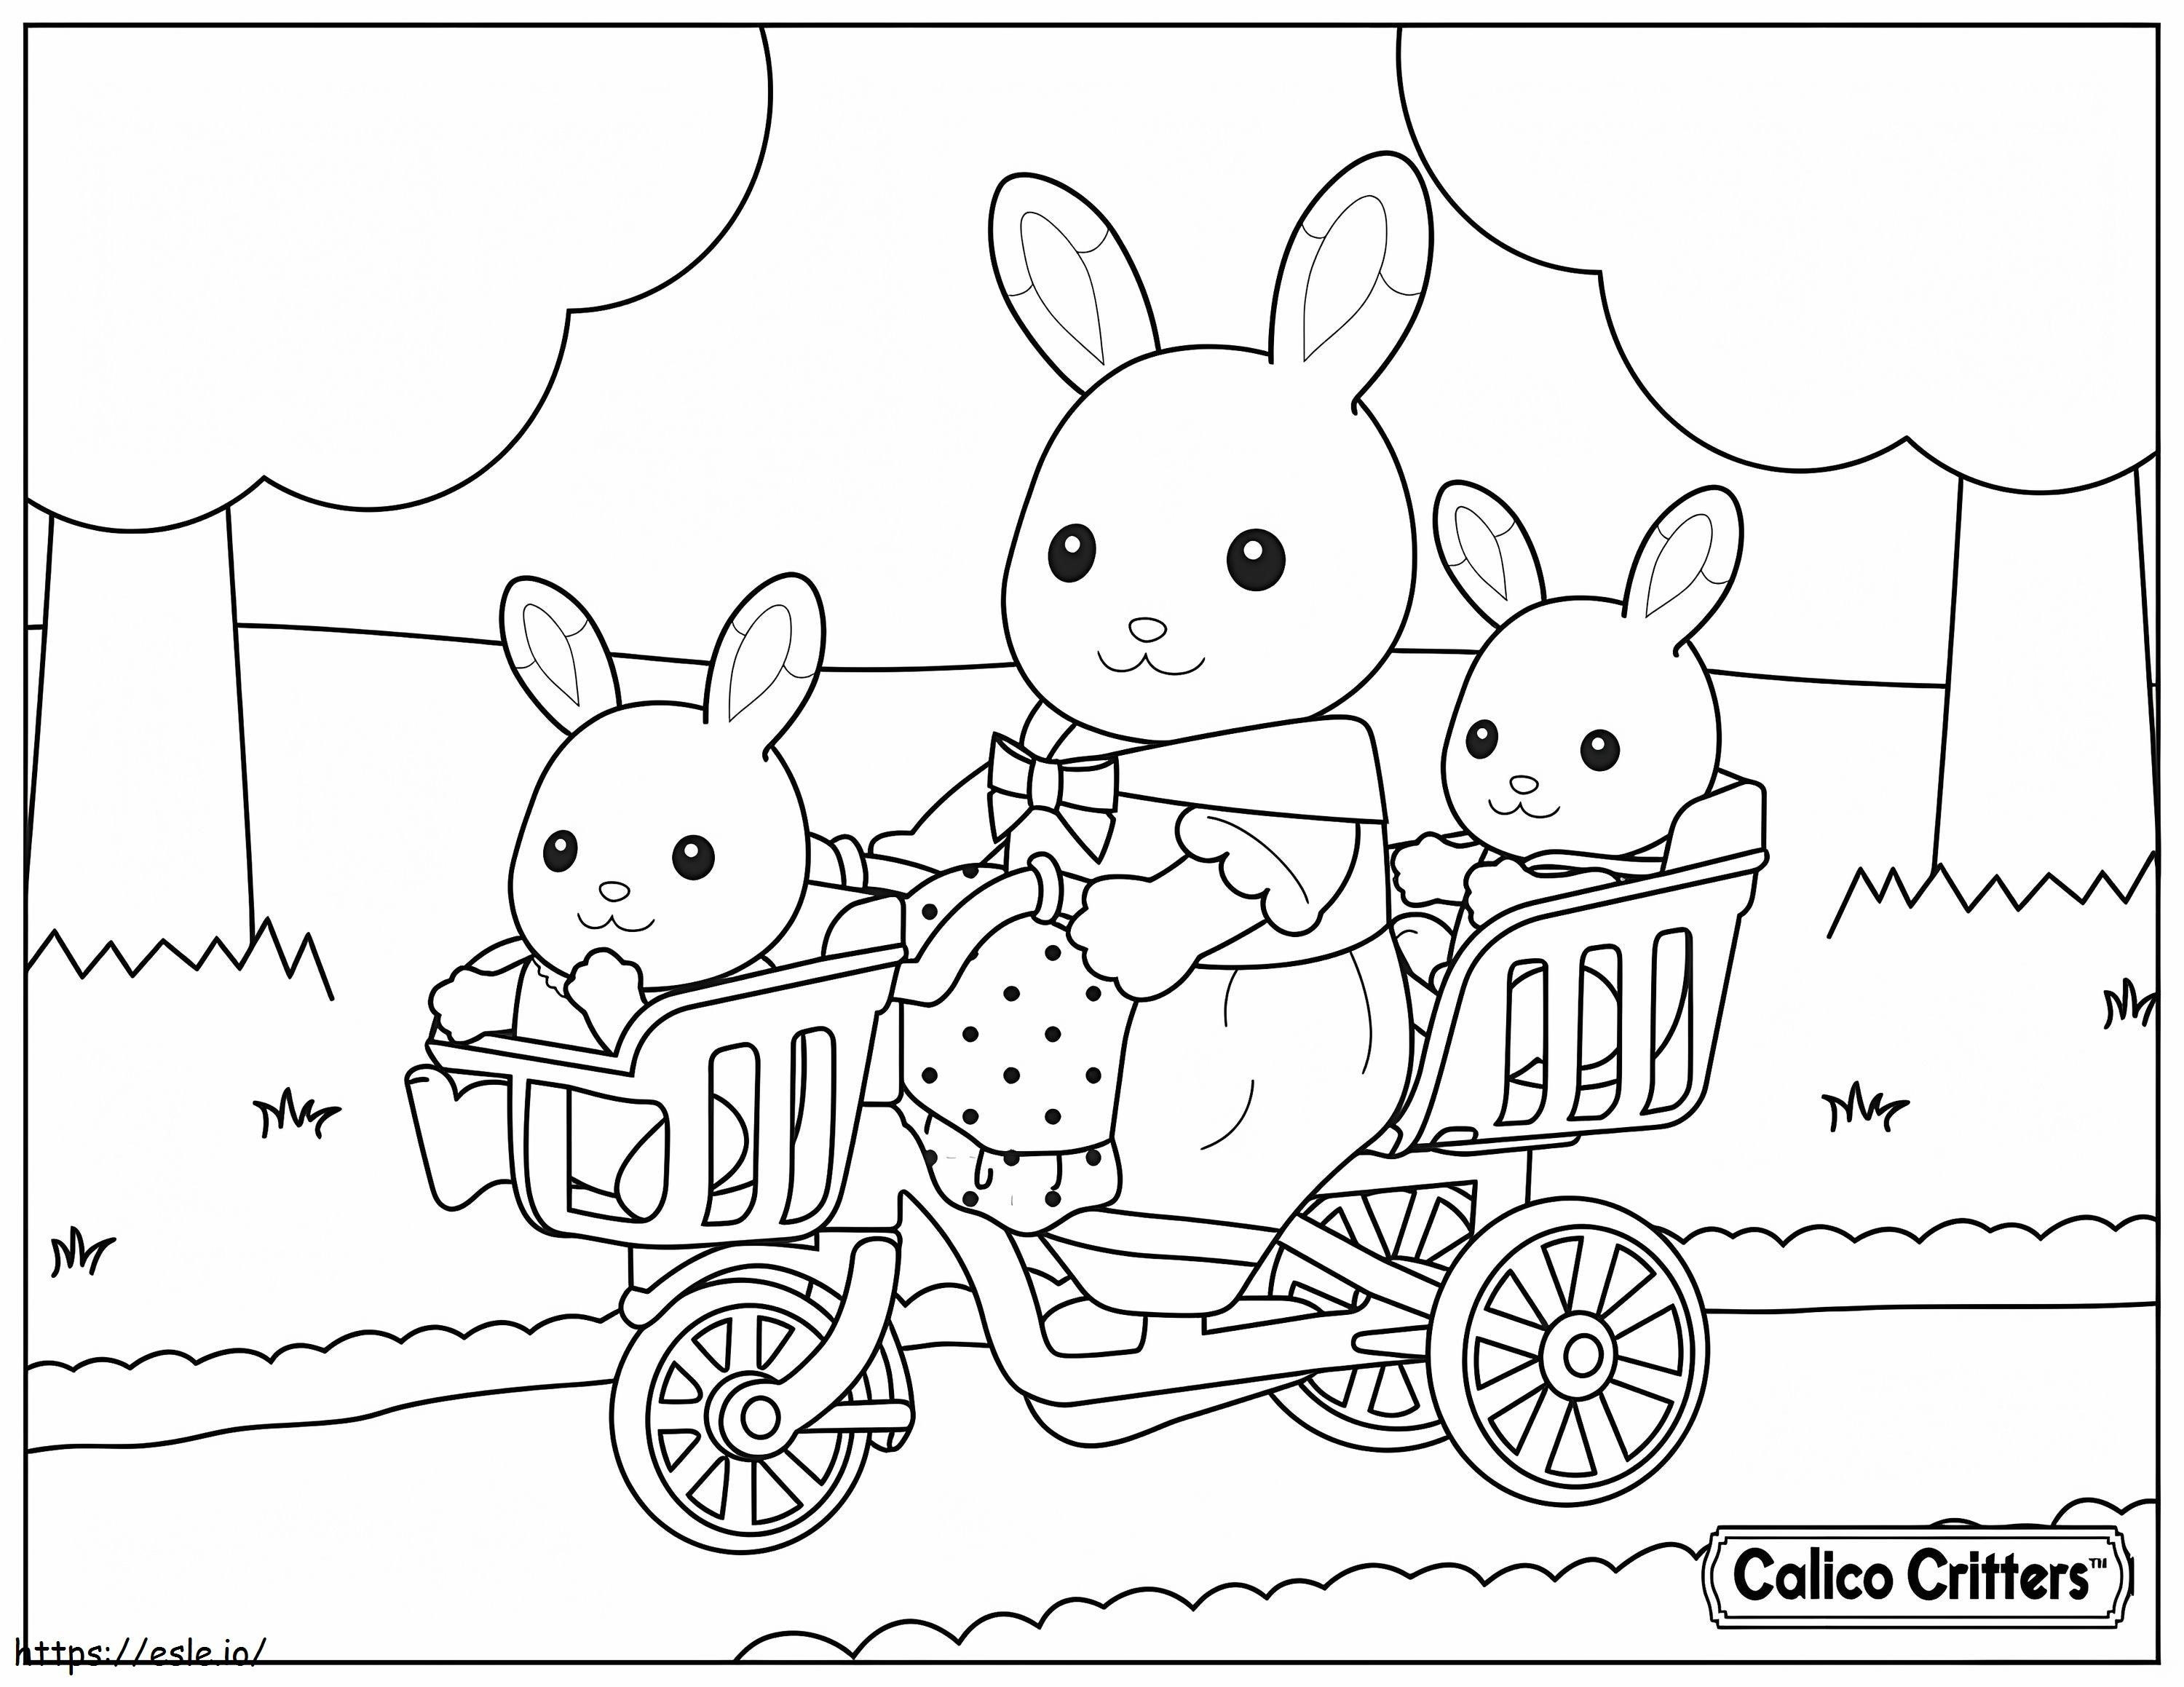  1515174989 Calico Critters con bici per bambini da colorare